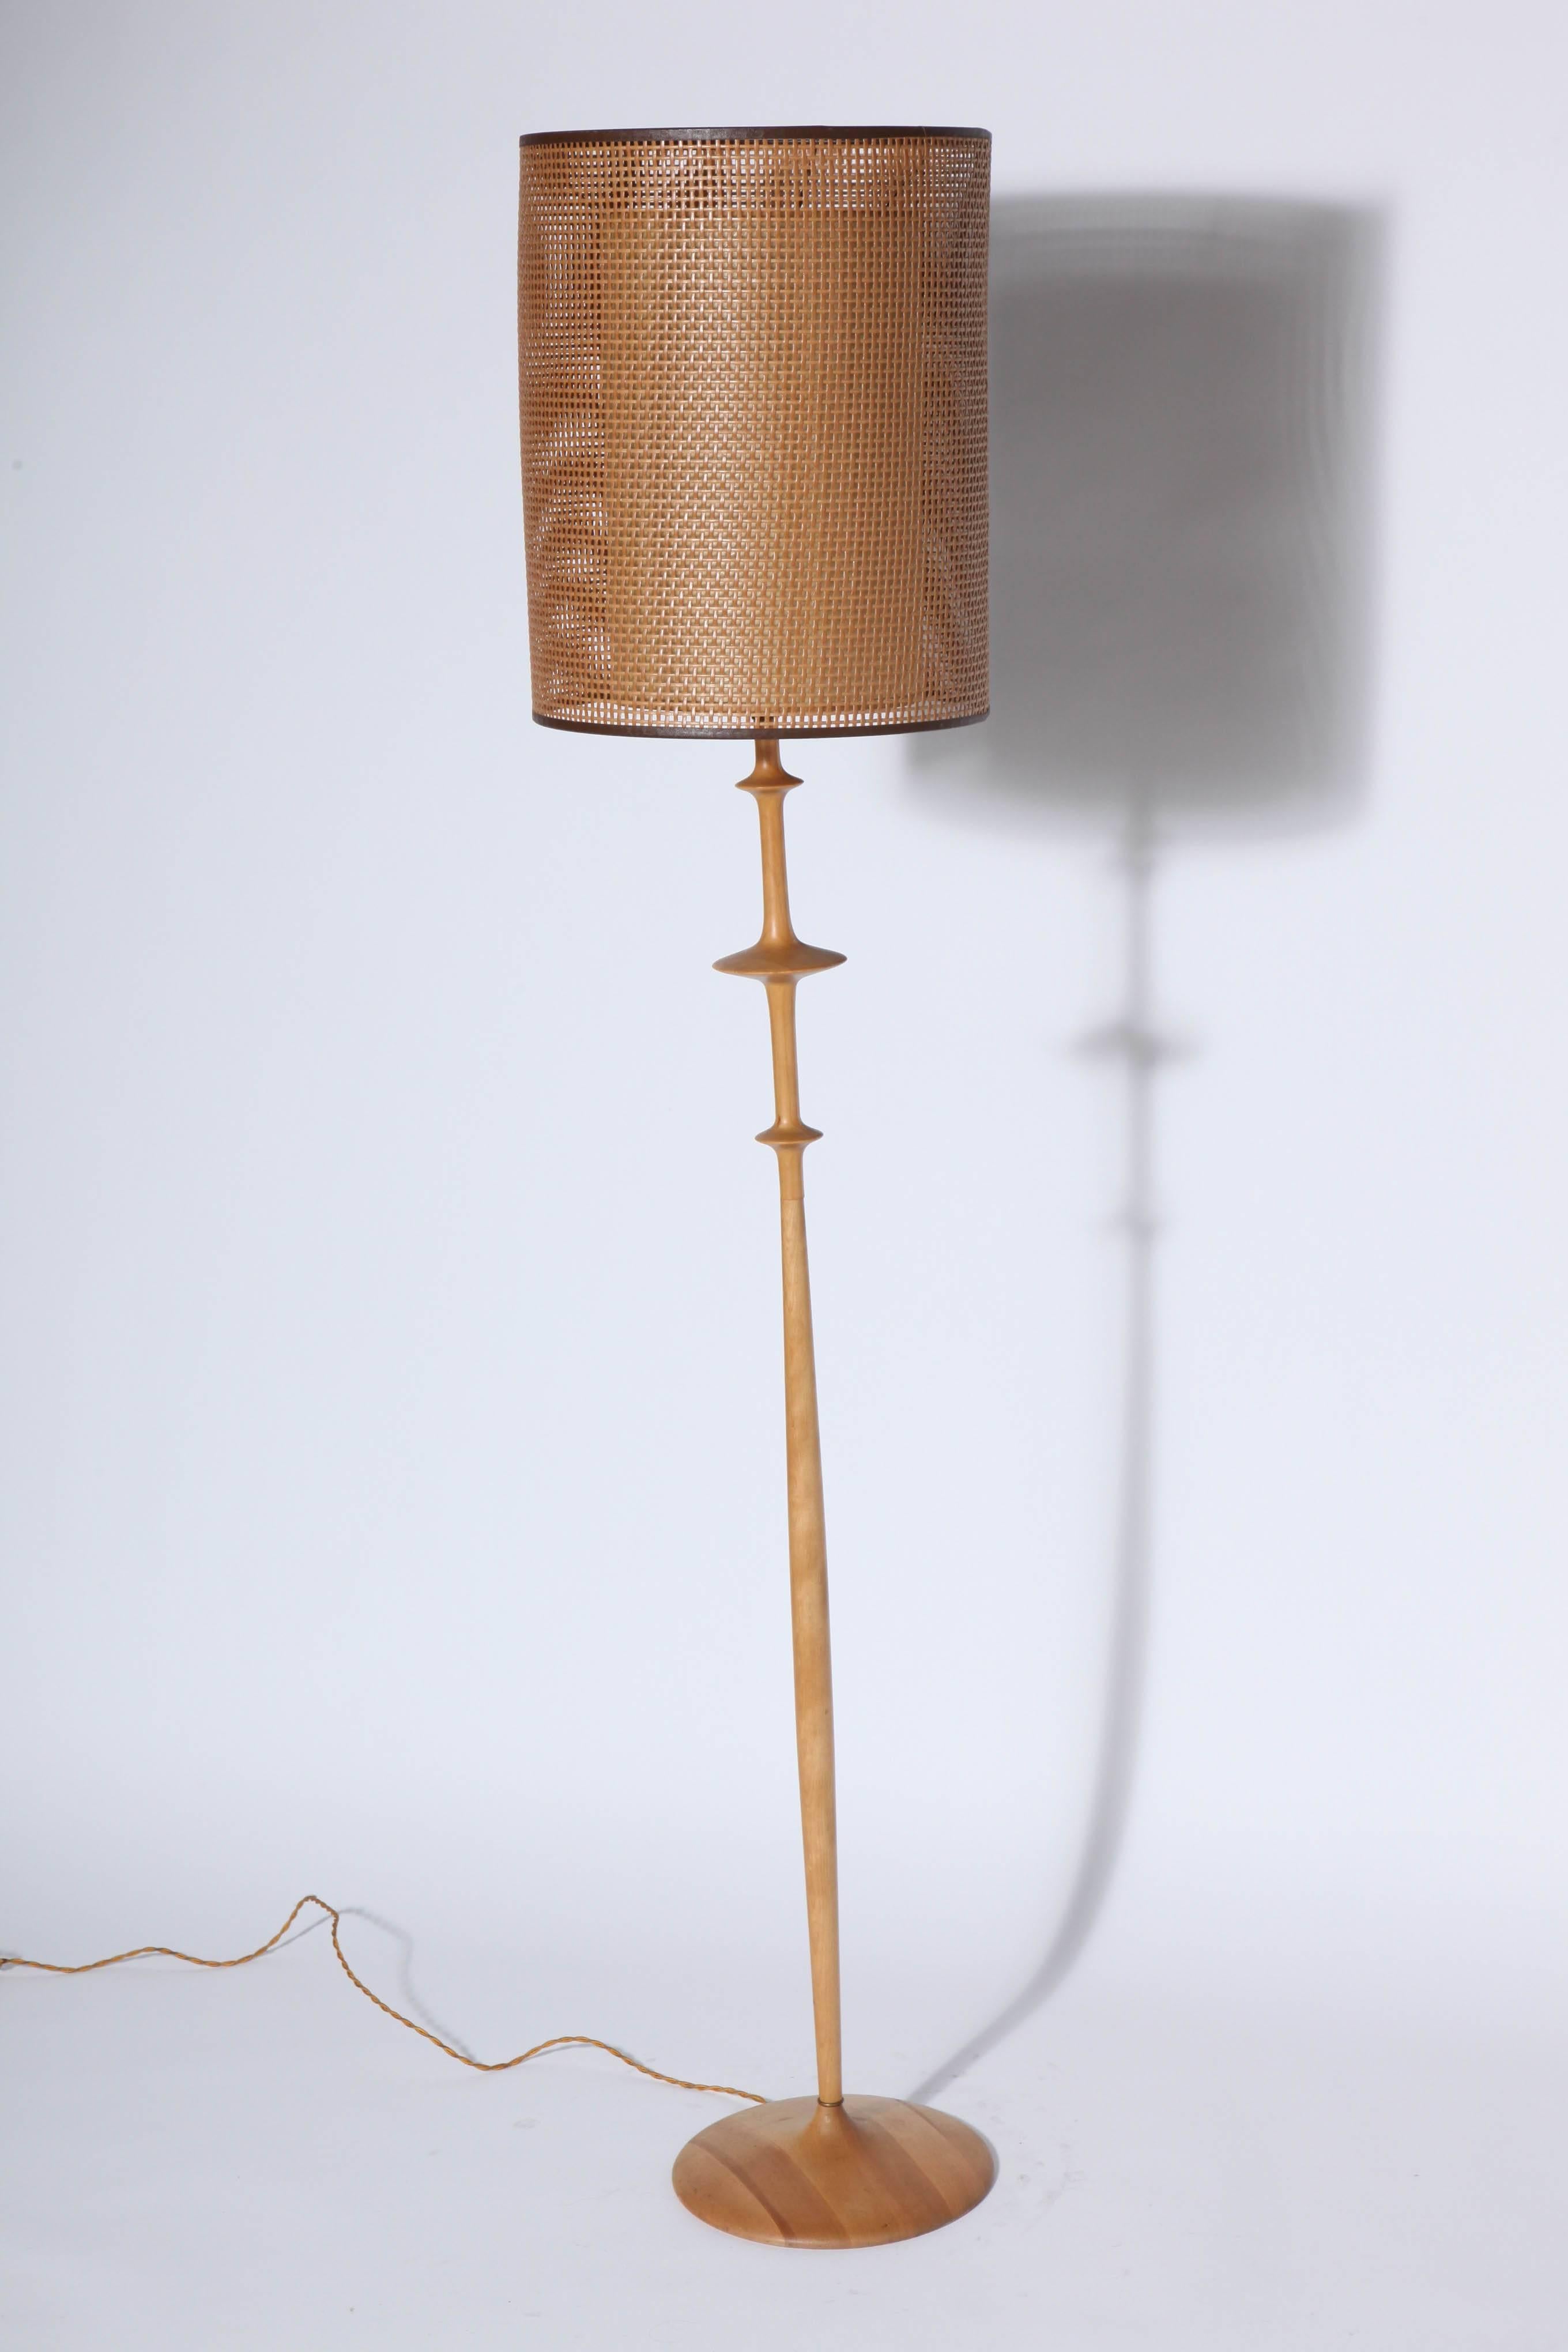 CX Design Studio Hand Turned Solid Beech Floor Lamp, 1970's For Sale 1